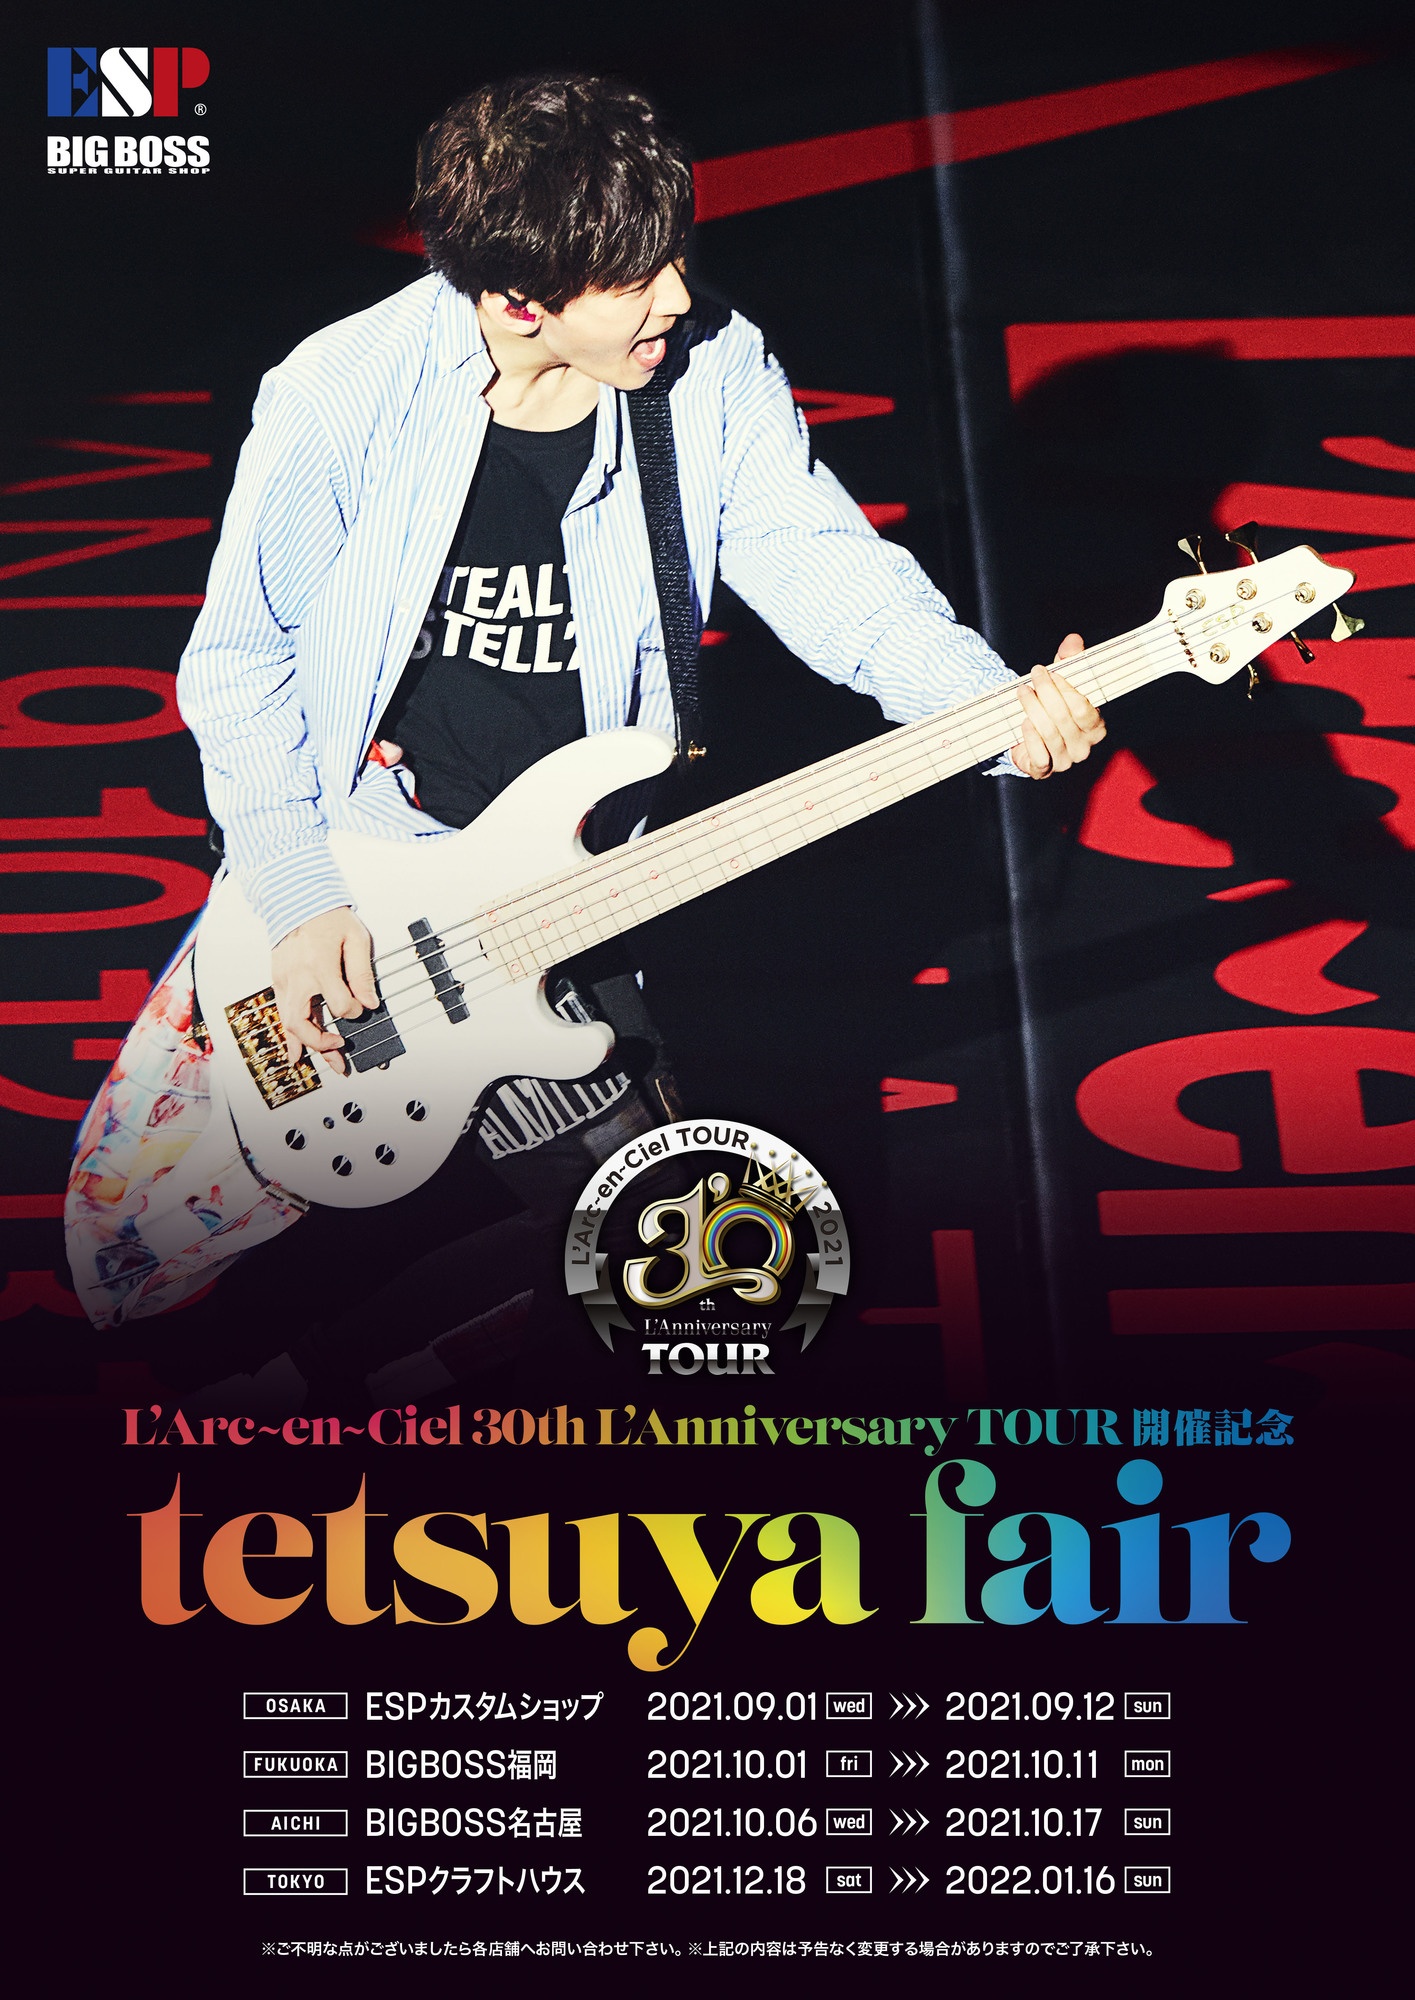 L'Arc-en-Ciel 30th L'Anniversary LIVE 開催記念 tetsuya Fair開催 